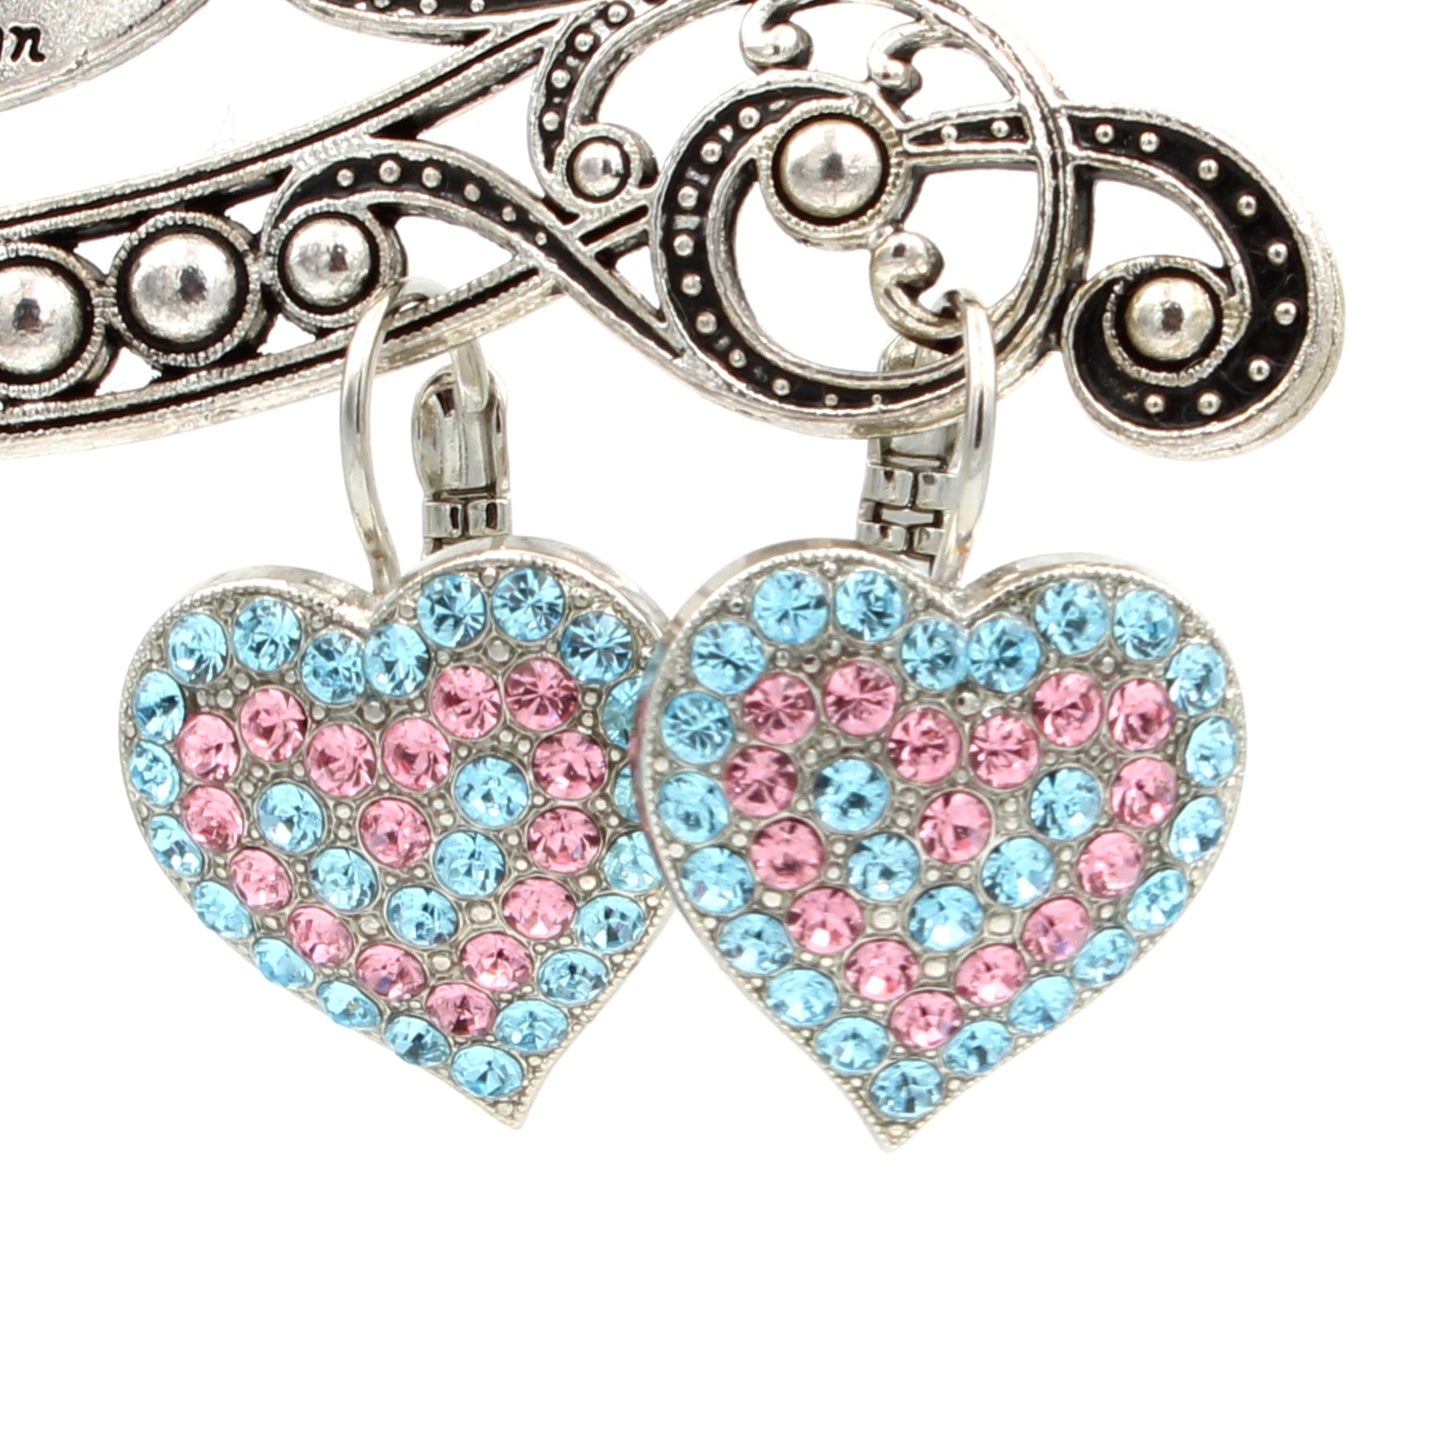 Funfetti Collection Heart Earrings